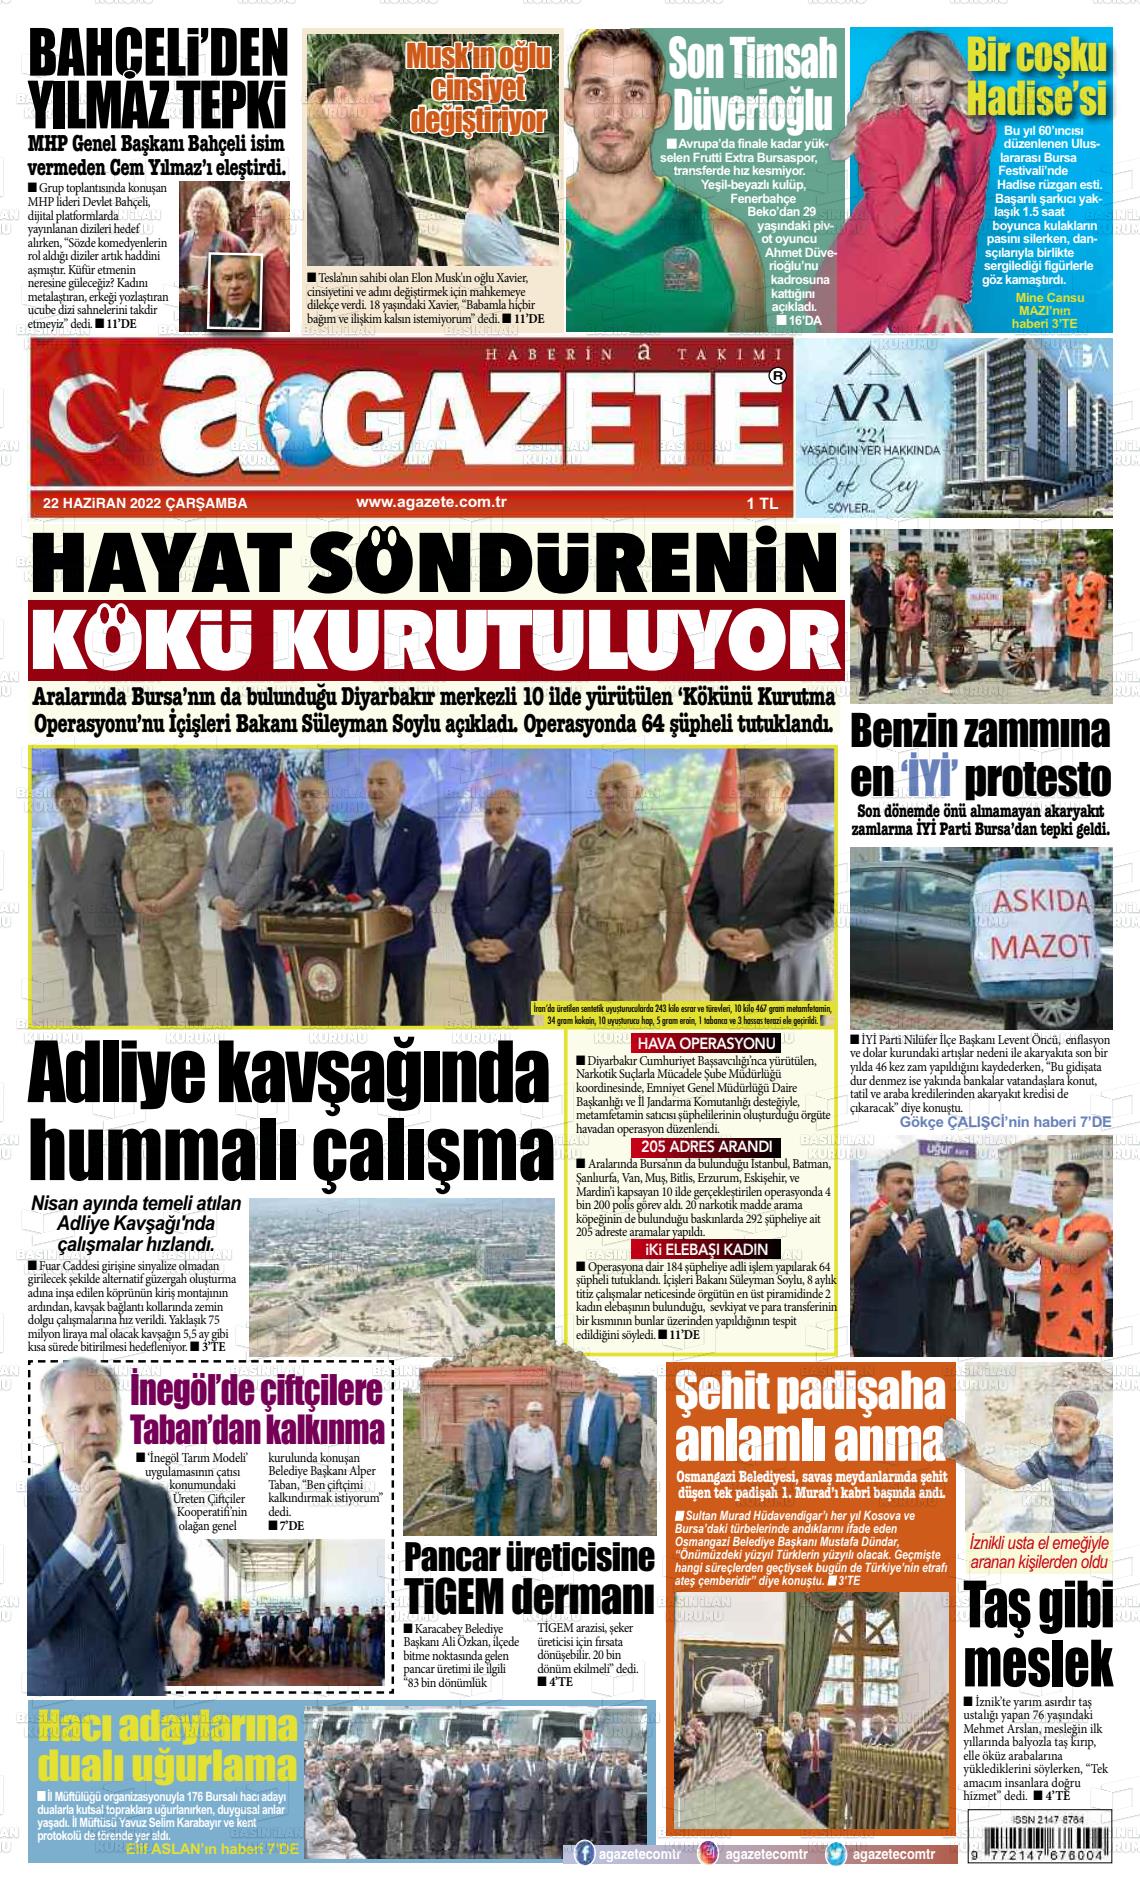 22 Haziran 2022 a gazete Gazete Manşeti